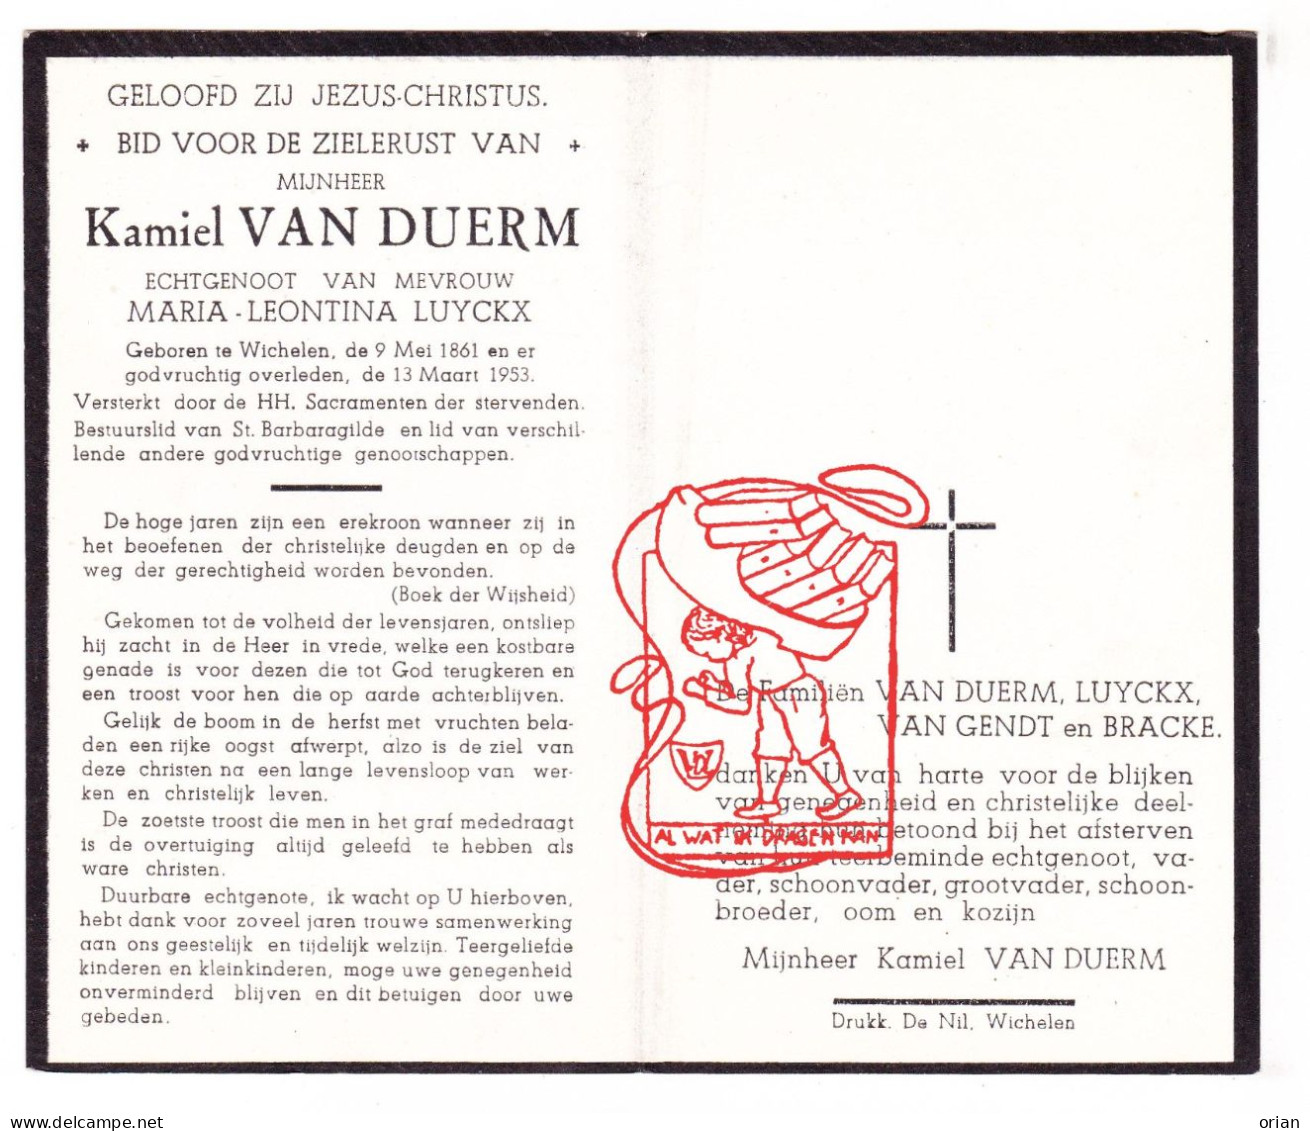 DP Kamiel Van Duerm ° Wichelen 1861 † 1953 X Maria Leontina Luyckx // Van Gendt Bracke - Devotion Images